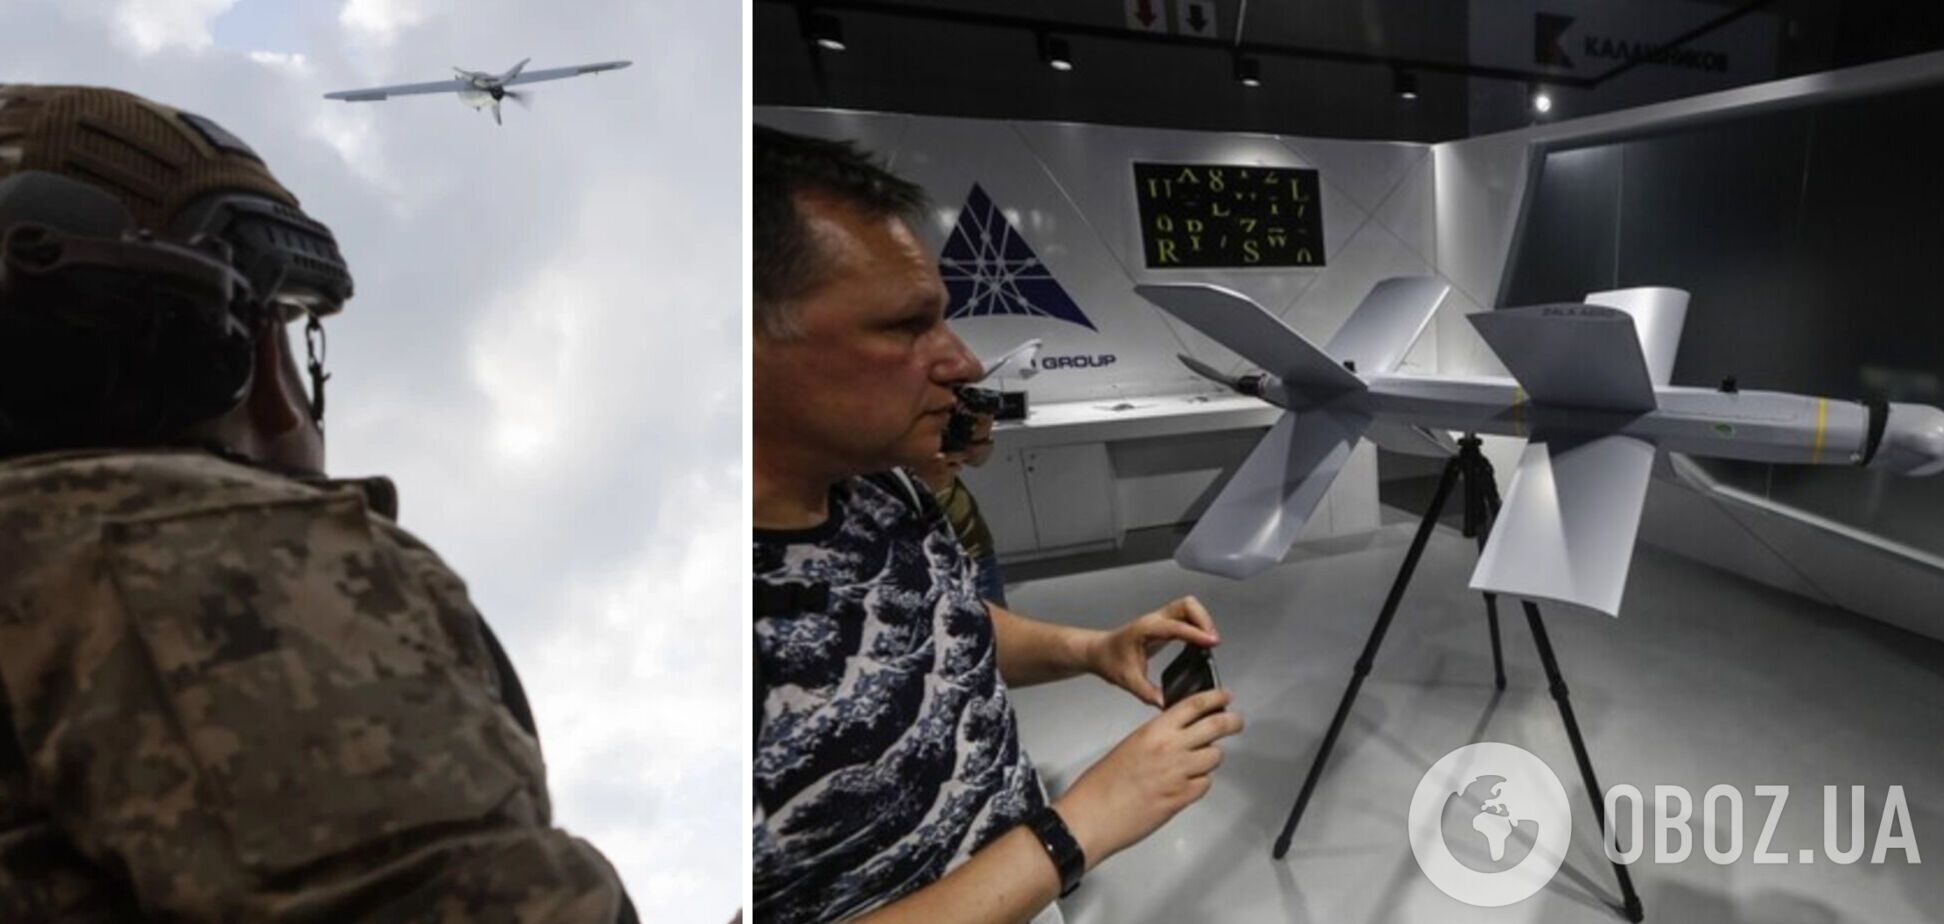 Увеличится дистанция поражения: украинские аналоги дронов 'Ланцет' прошли первые испытания